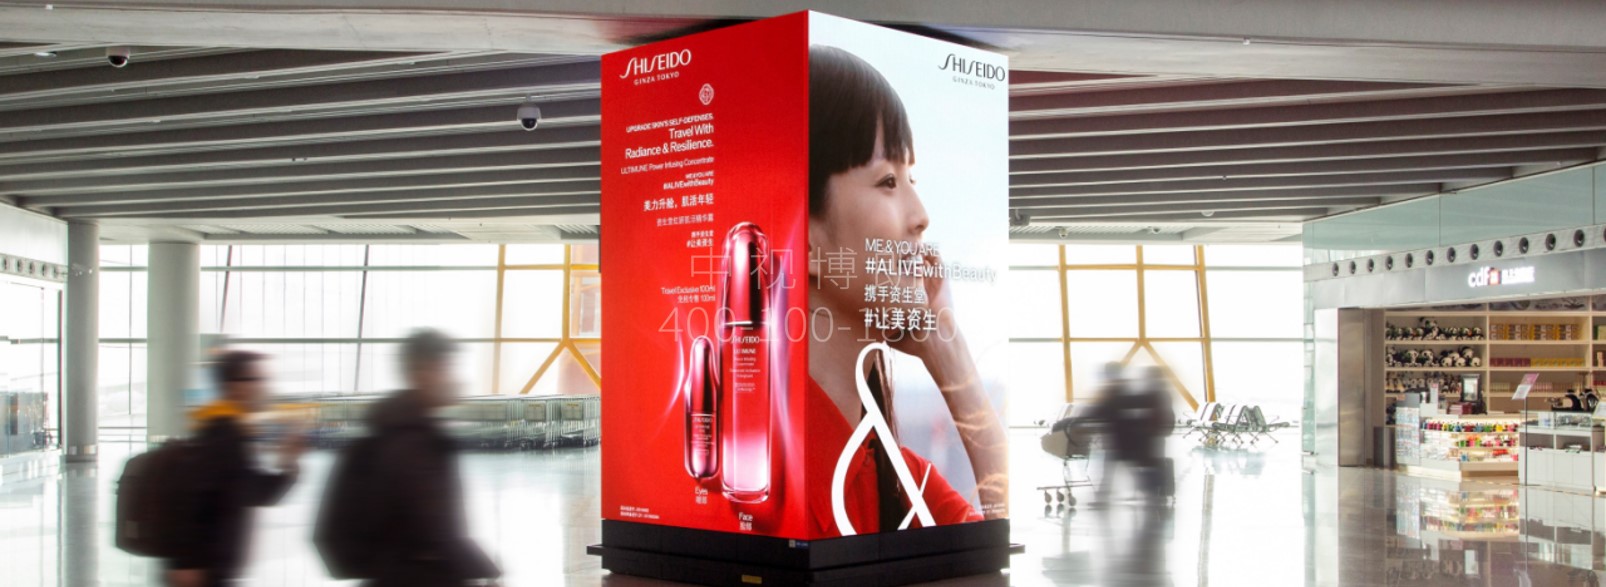 北京首都机场广告-T3国际出发免税区包柱LED屏